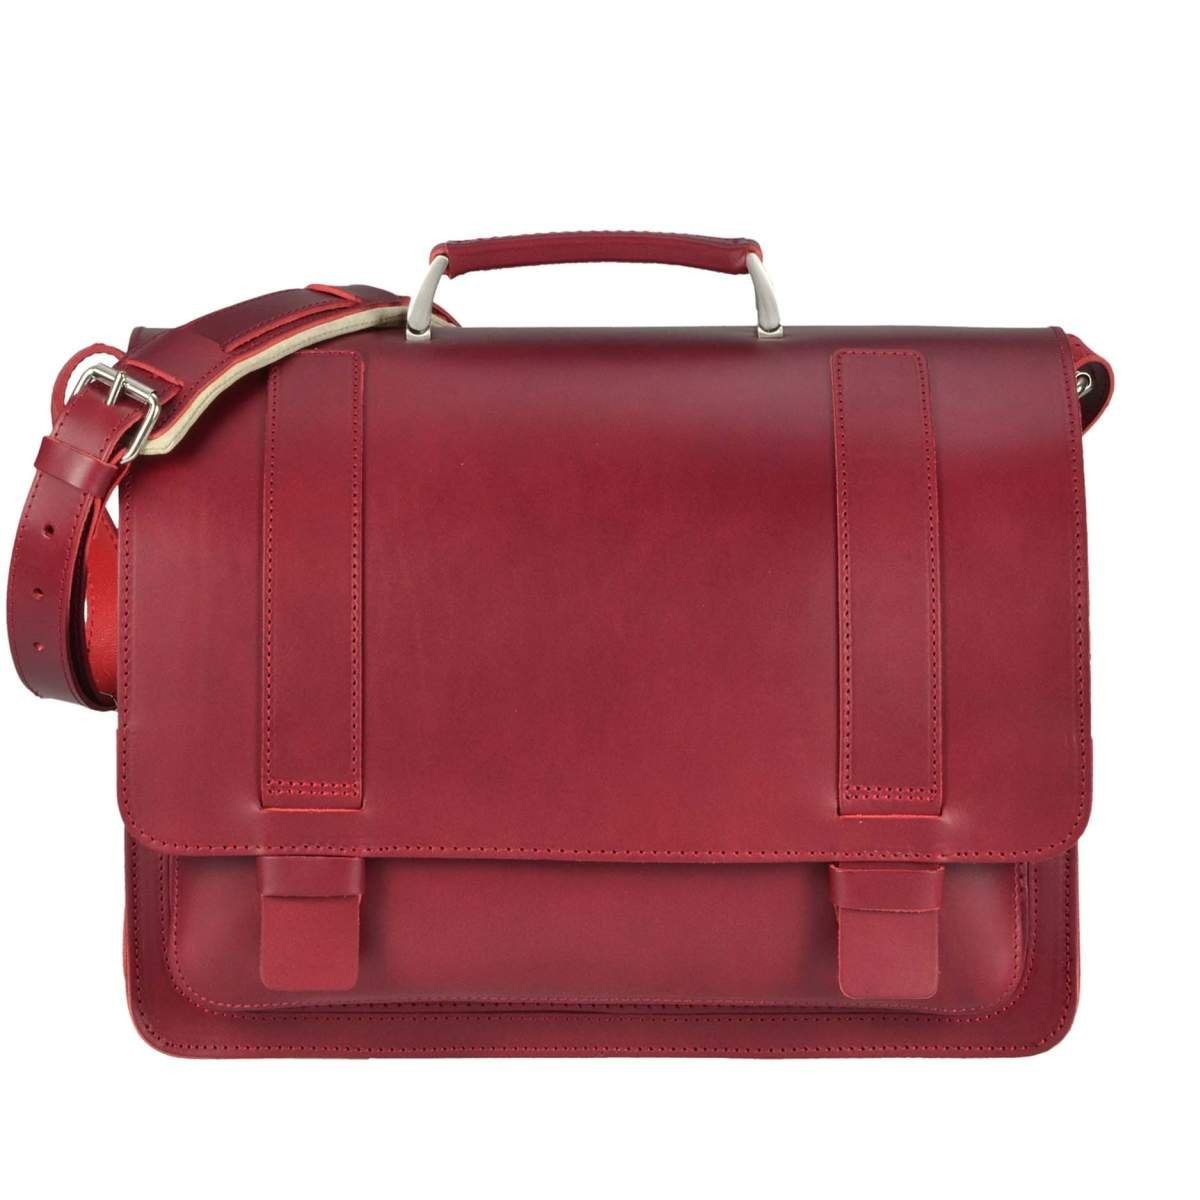 Ruitertassen Aktentasche Classic, 40 cm Lehrertasche mit 2 Fächern, Schultasche, dickes rustikales Leder rot